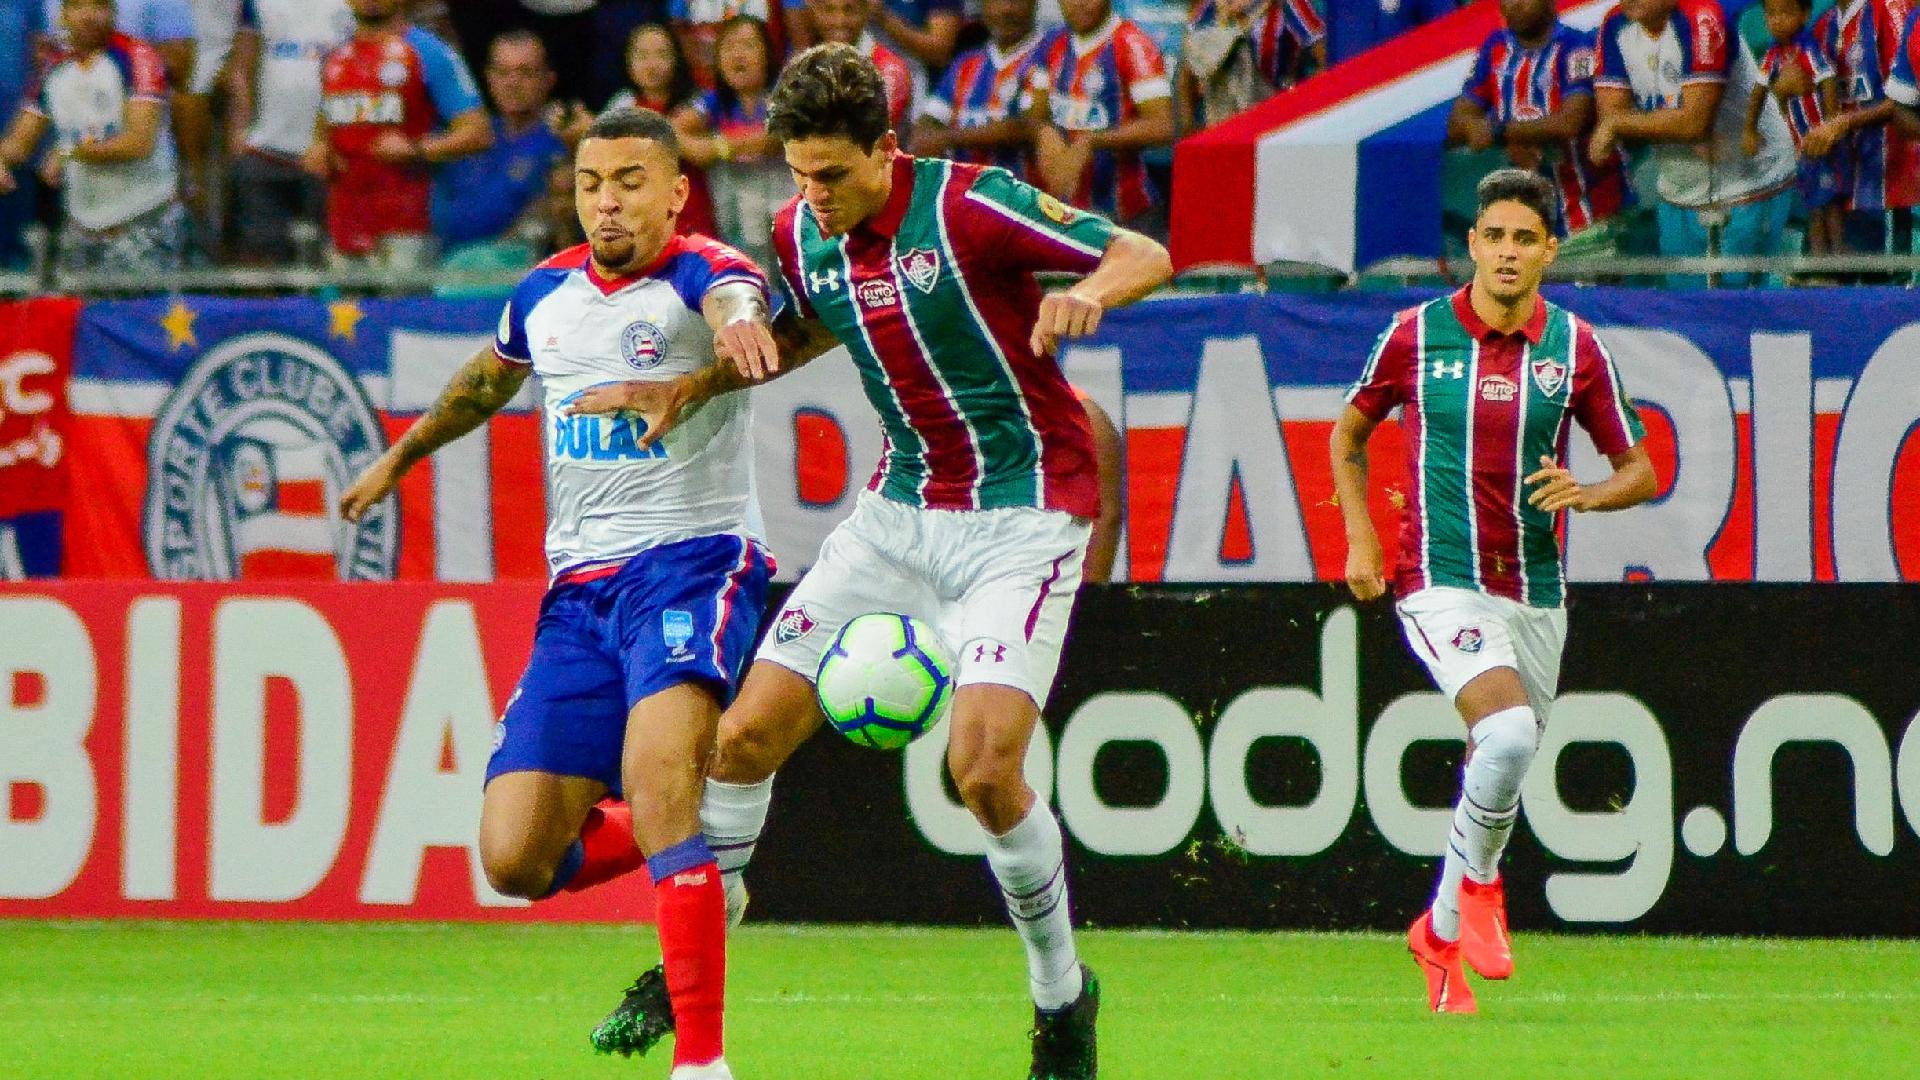 Pedro disputa bola durante partida entre Fluminense e Bahia